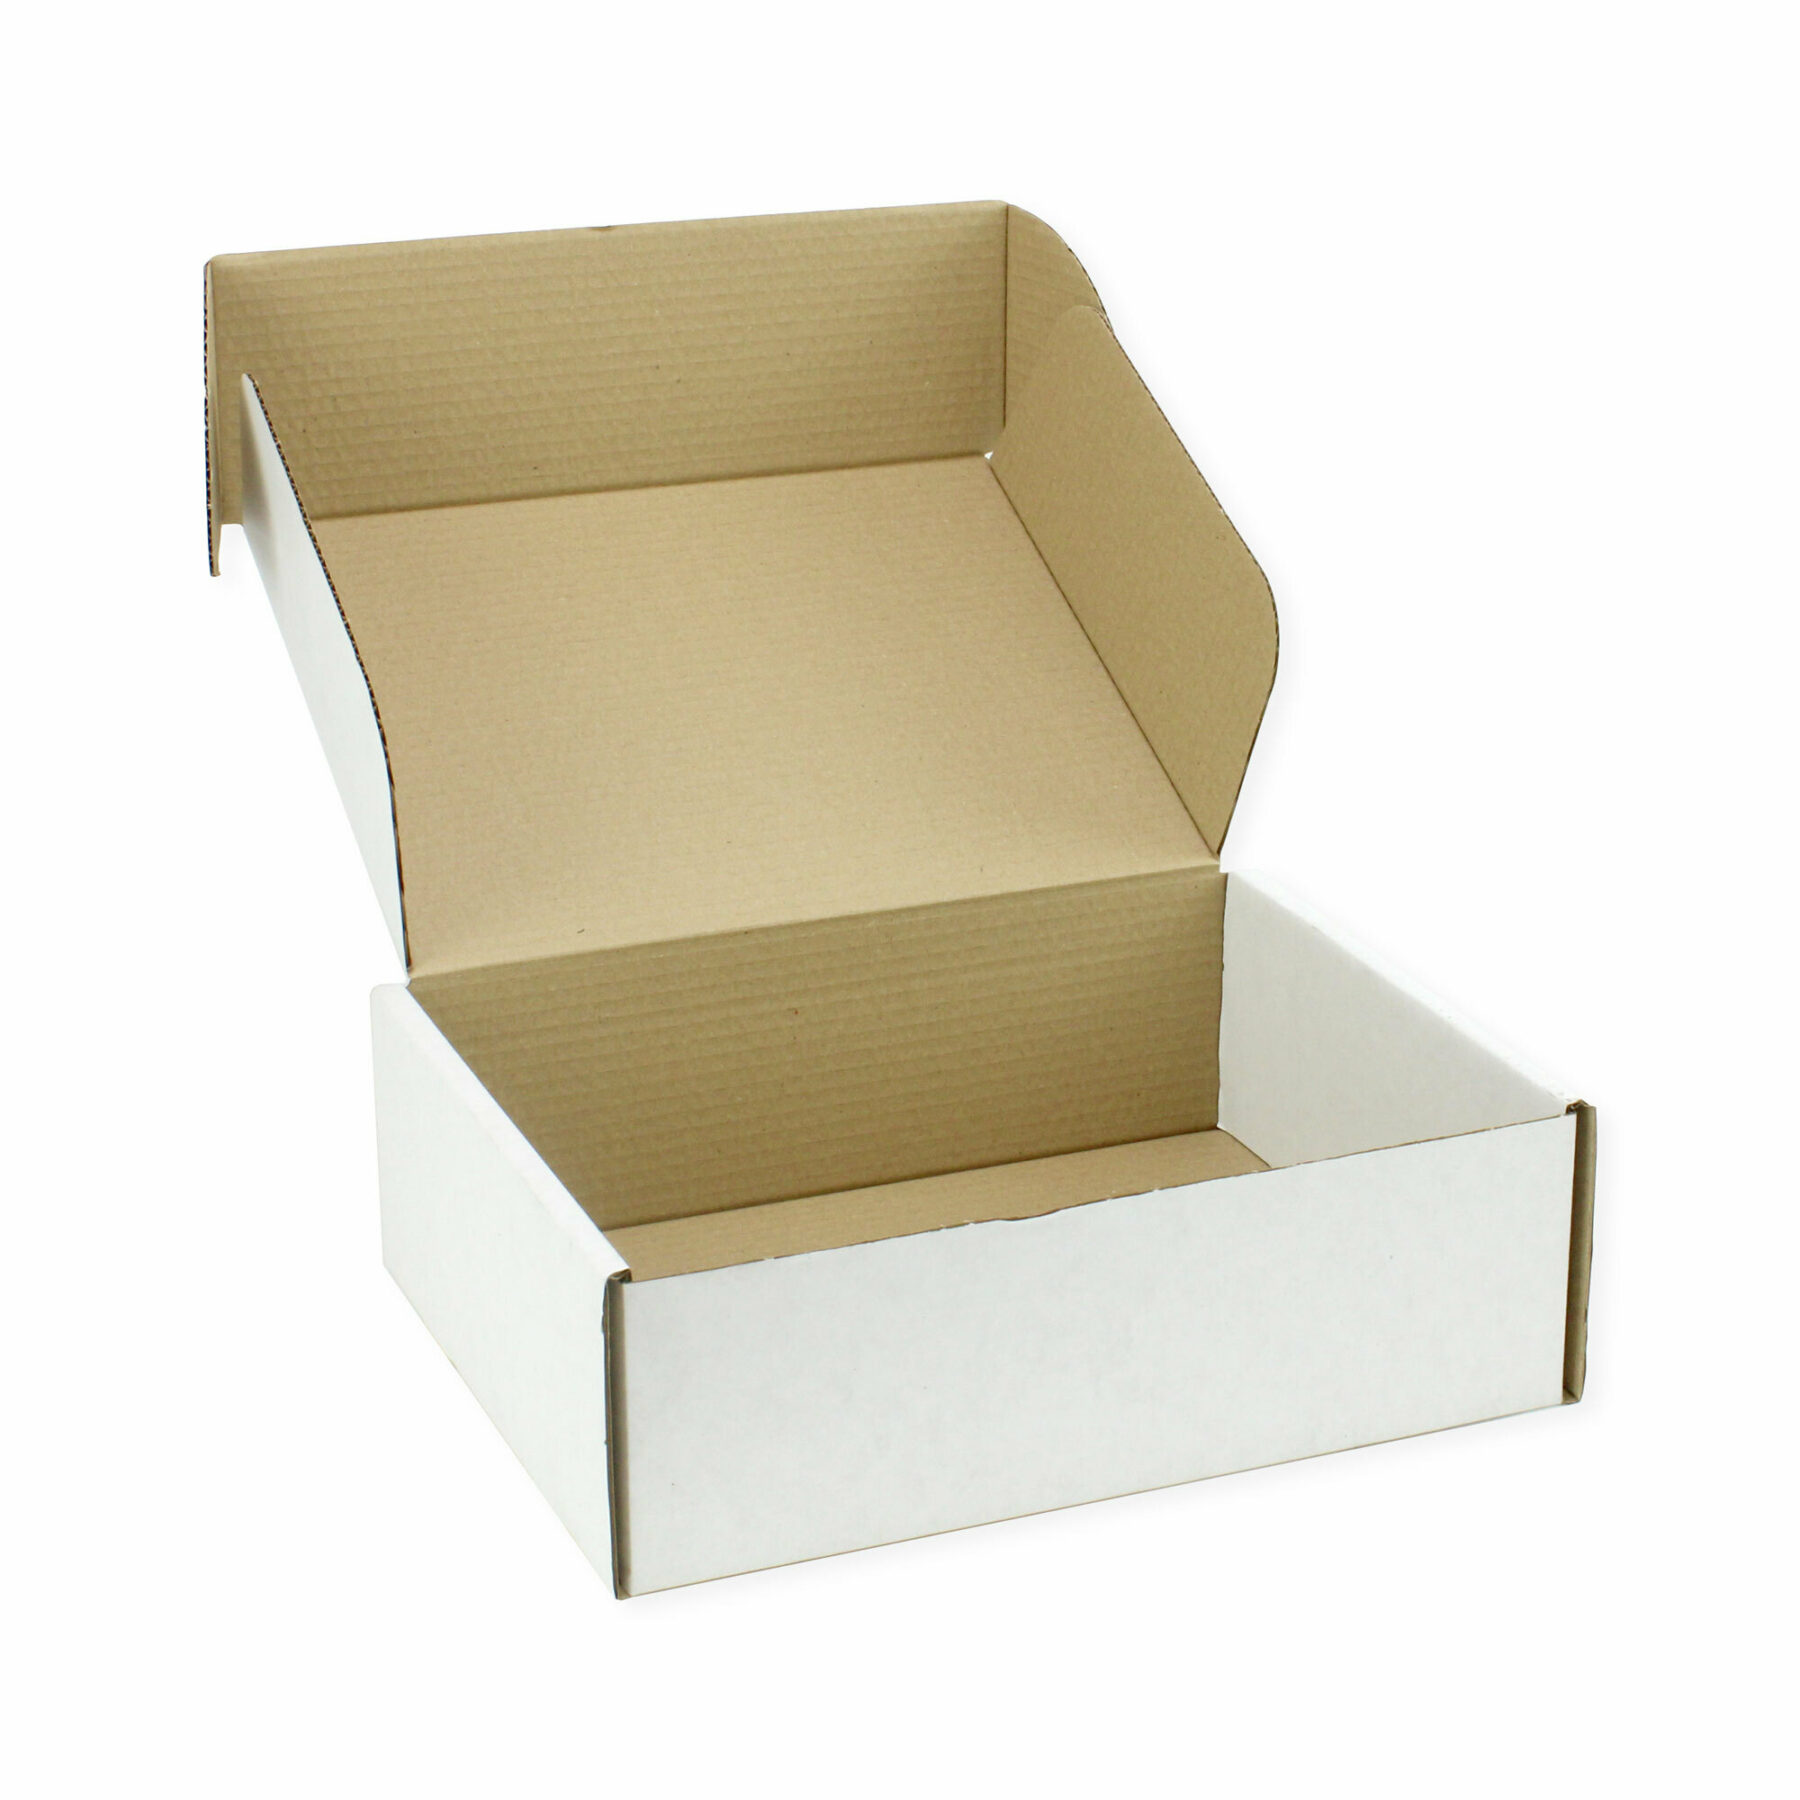 30.5 x 24 x 10cm Postal Box (10pcs) - open